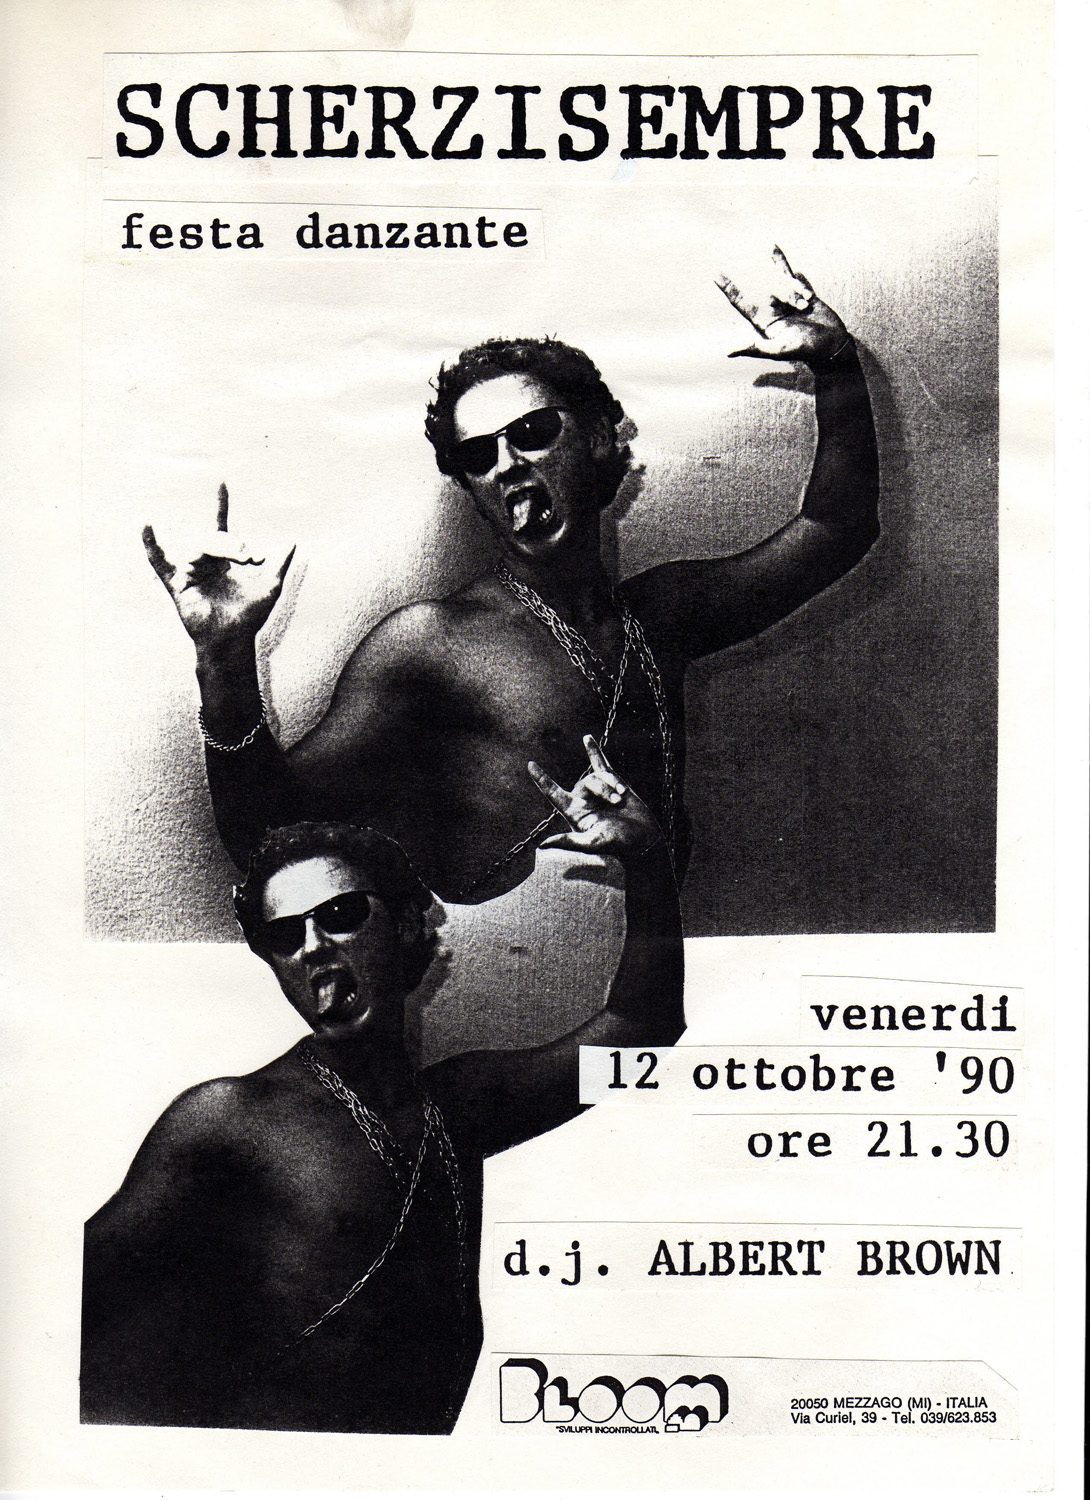 Volantino per la festa danzante Scherzi Sempre. 1990